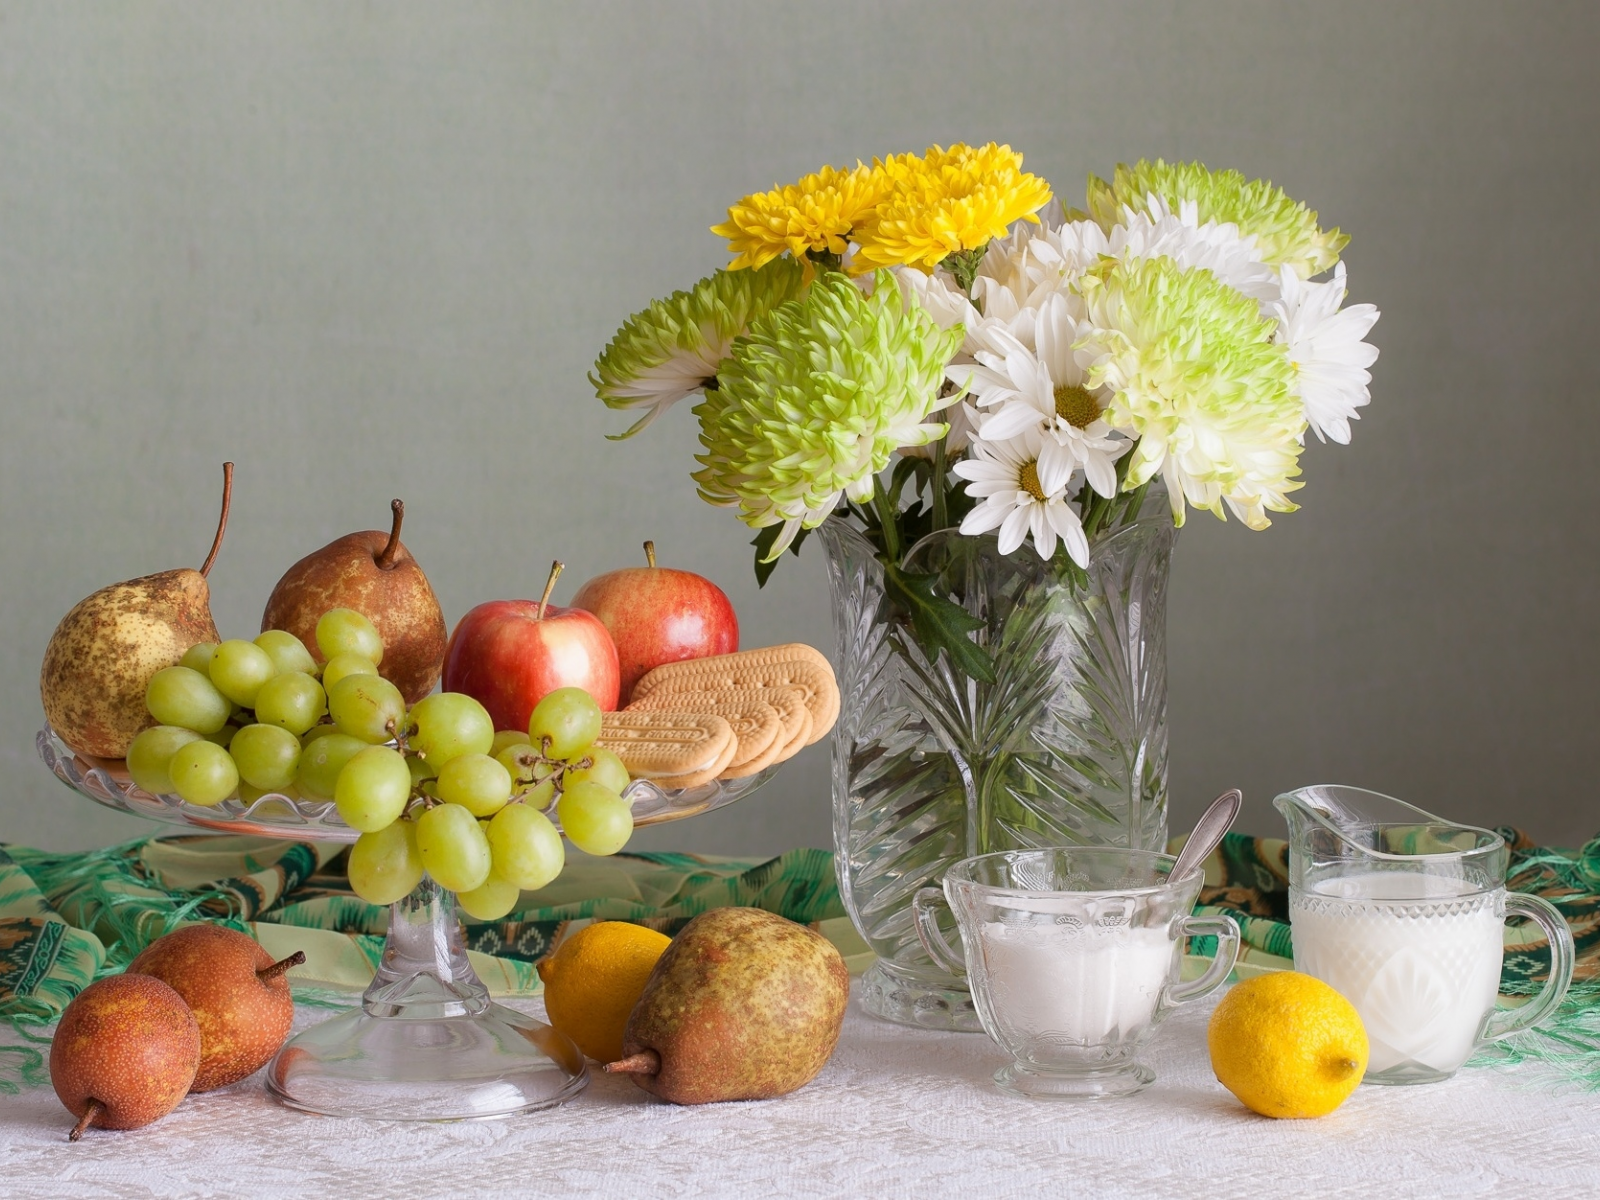 цветы, лимон, яблоко, букет, печенье, виноград, фрукты, натюрморт, груши, хризантемы